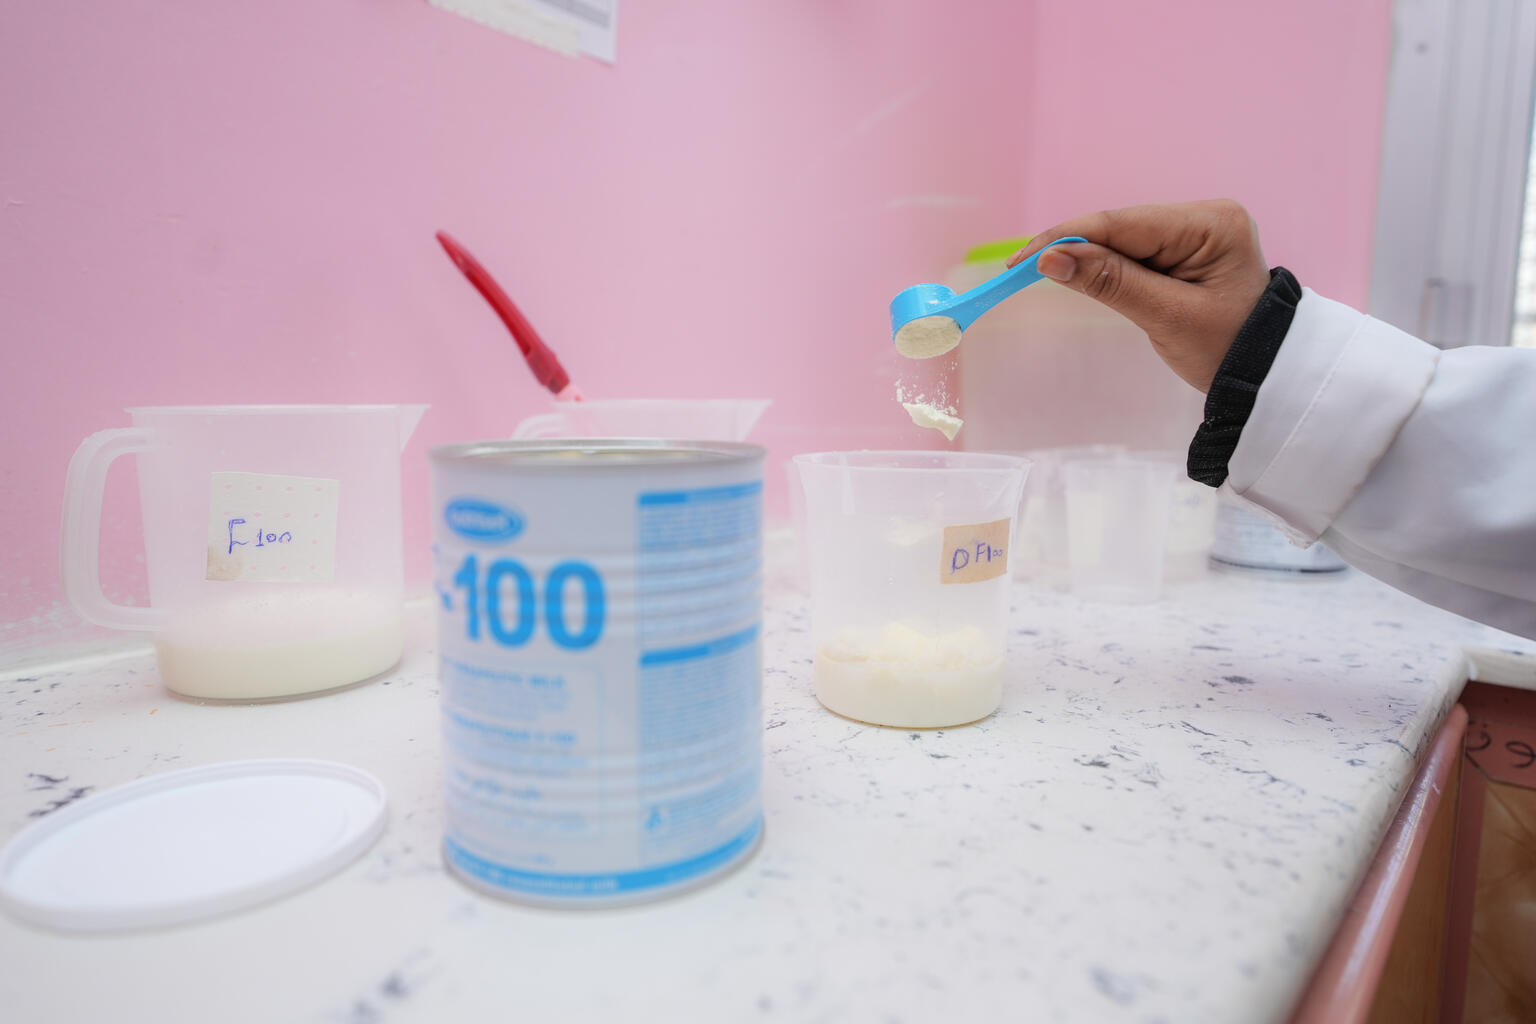 イブン・ハルドゥーン病院の栄養治療センターで、サナドちゃんに飲ませる治療用ミルクを準備する様子（イエメン、2023年3月7日撮影）